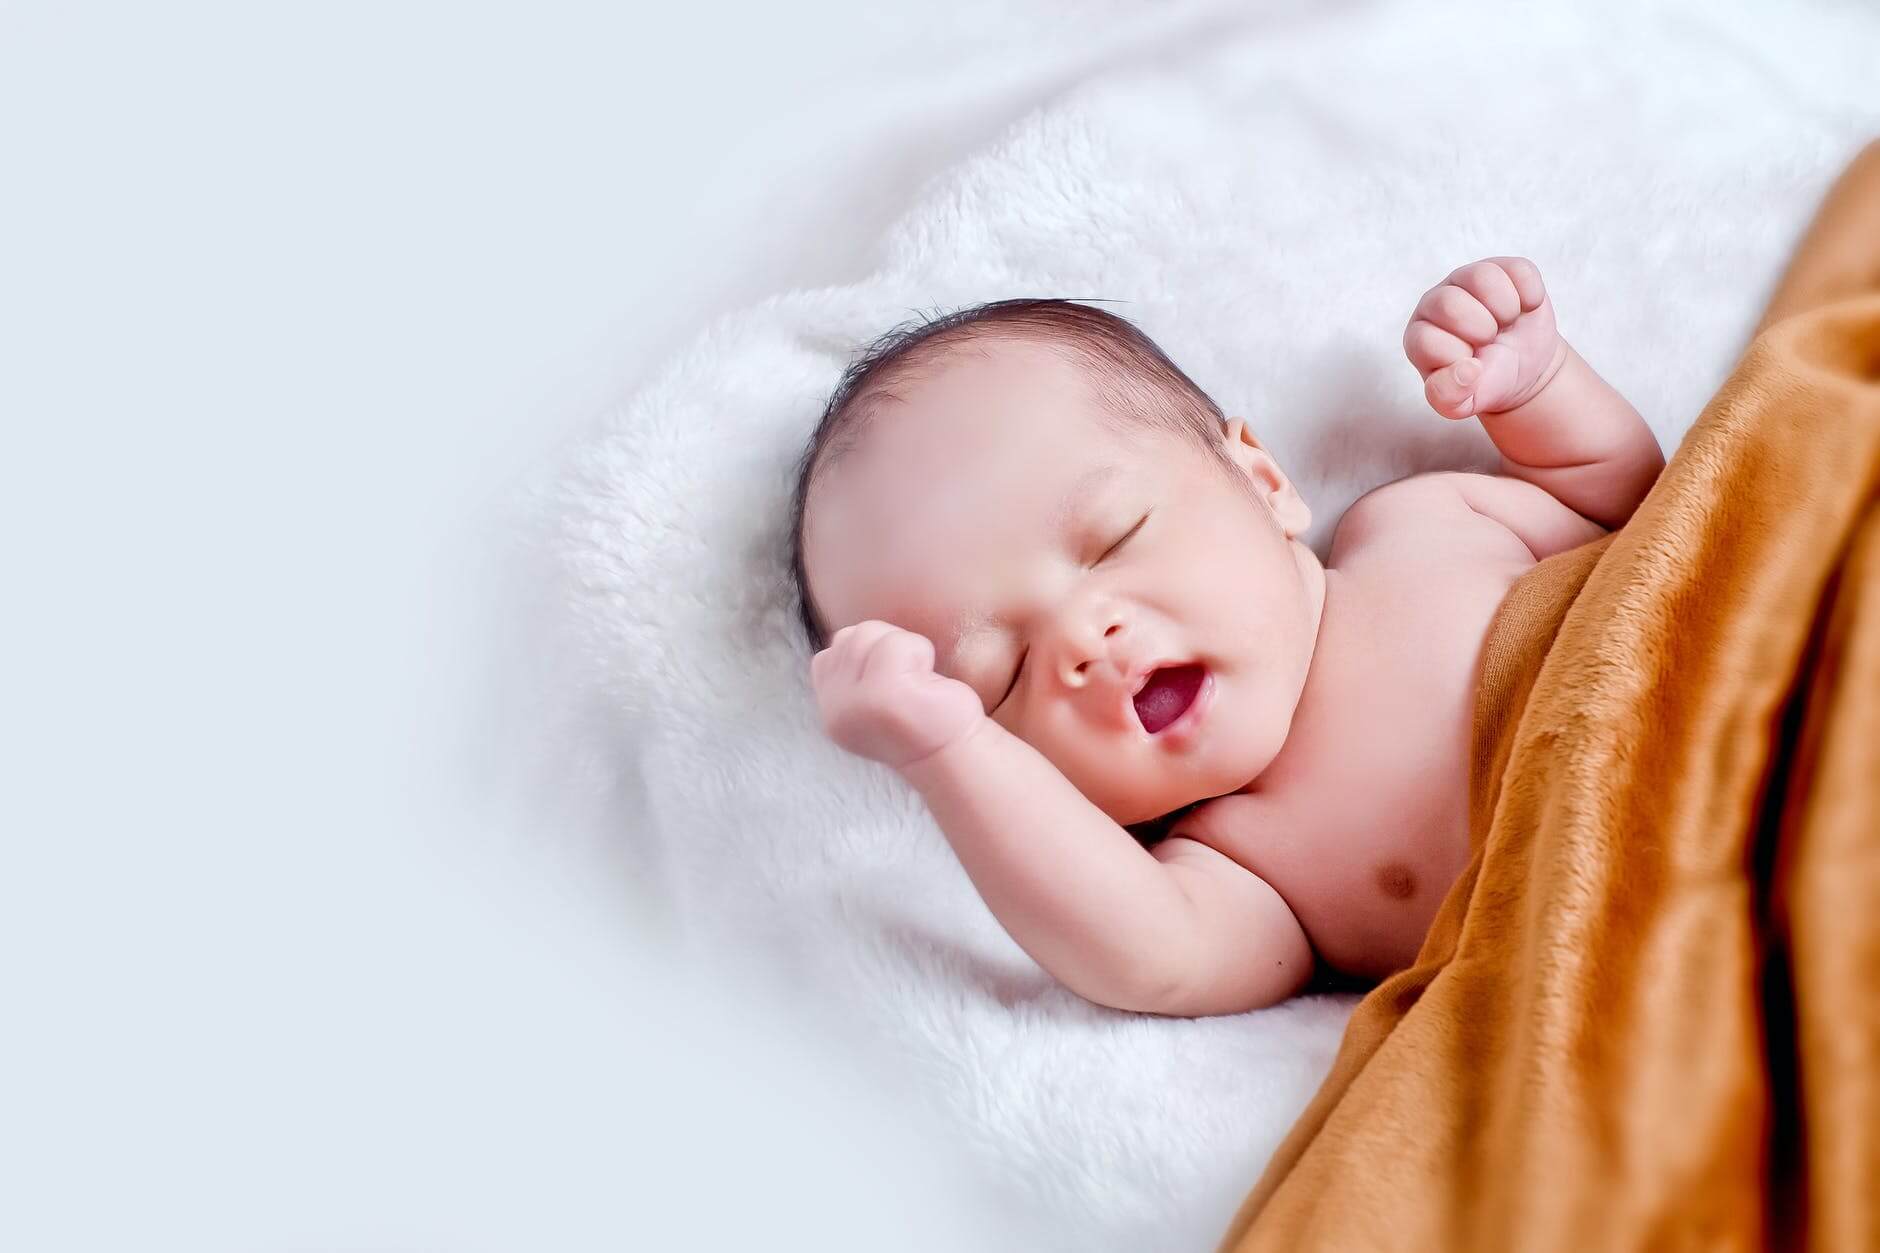 melhor cobertor para bebe - Melhor Cobertor para Bebê: veja como escolher o ideal